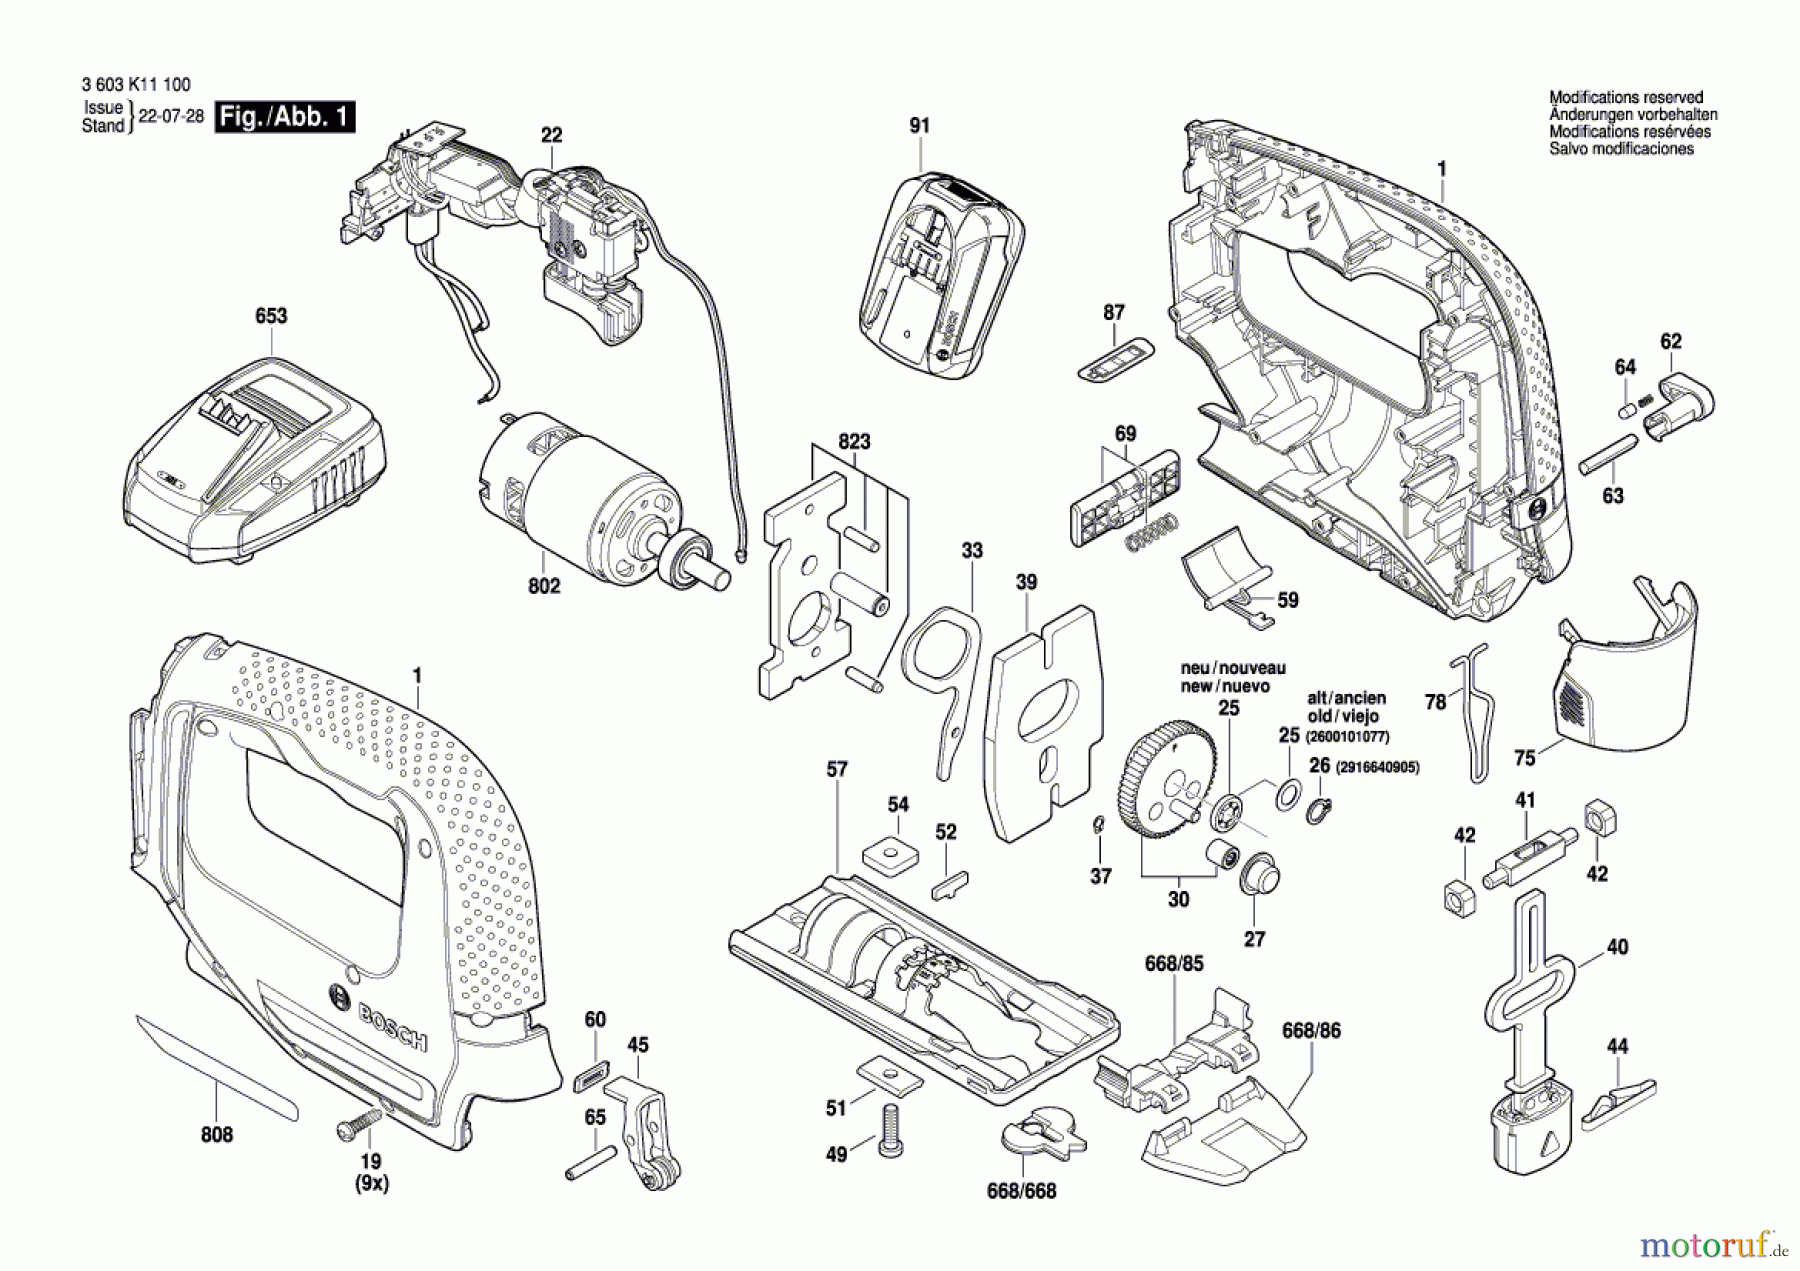  Bosch Akku Werkzeug Akku-Stichsäge UniversalSaw 18V-100 Seite 1